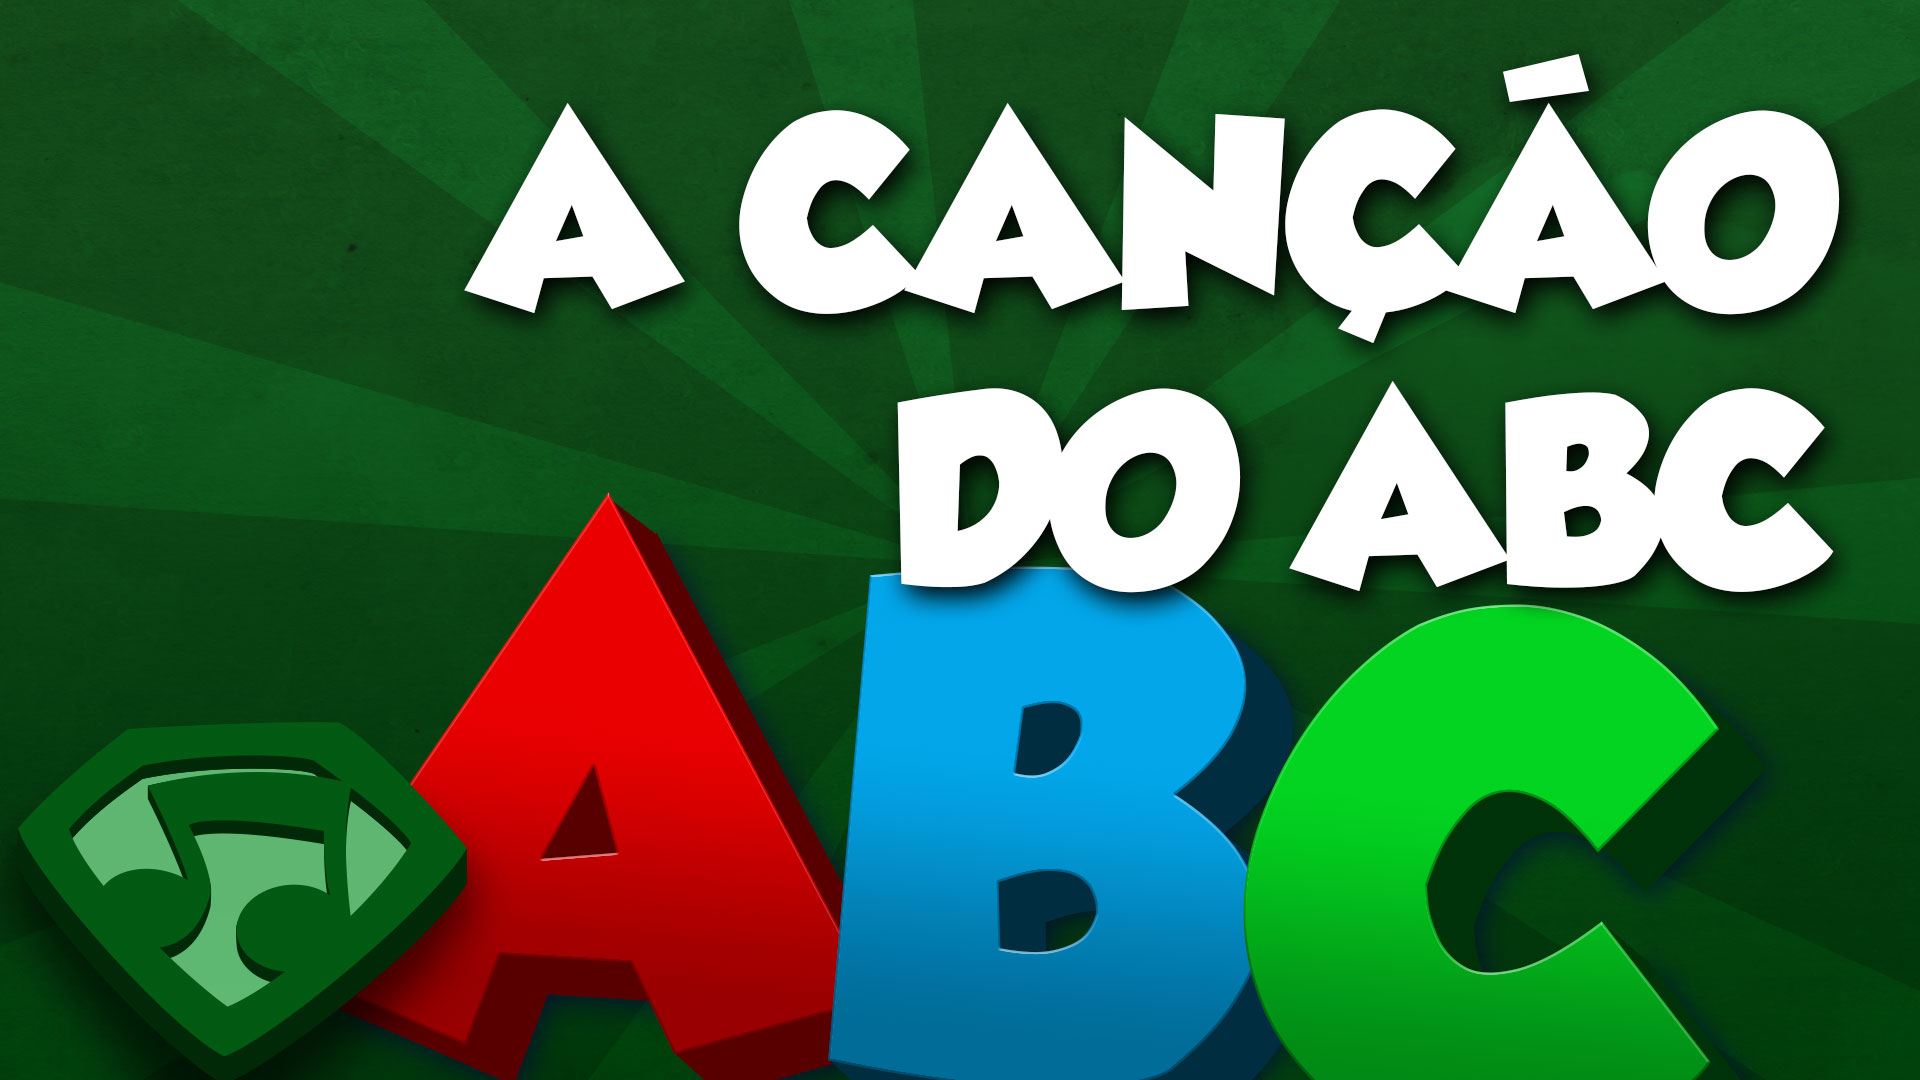 Miniatura do vídeo A Canção do ABC. Clique para assistir o vídeo.